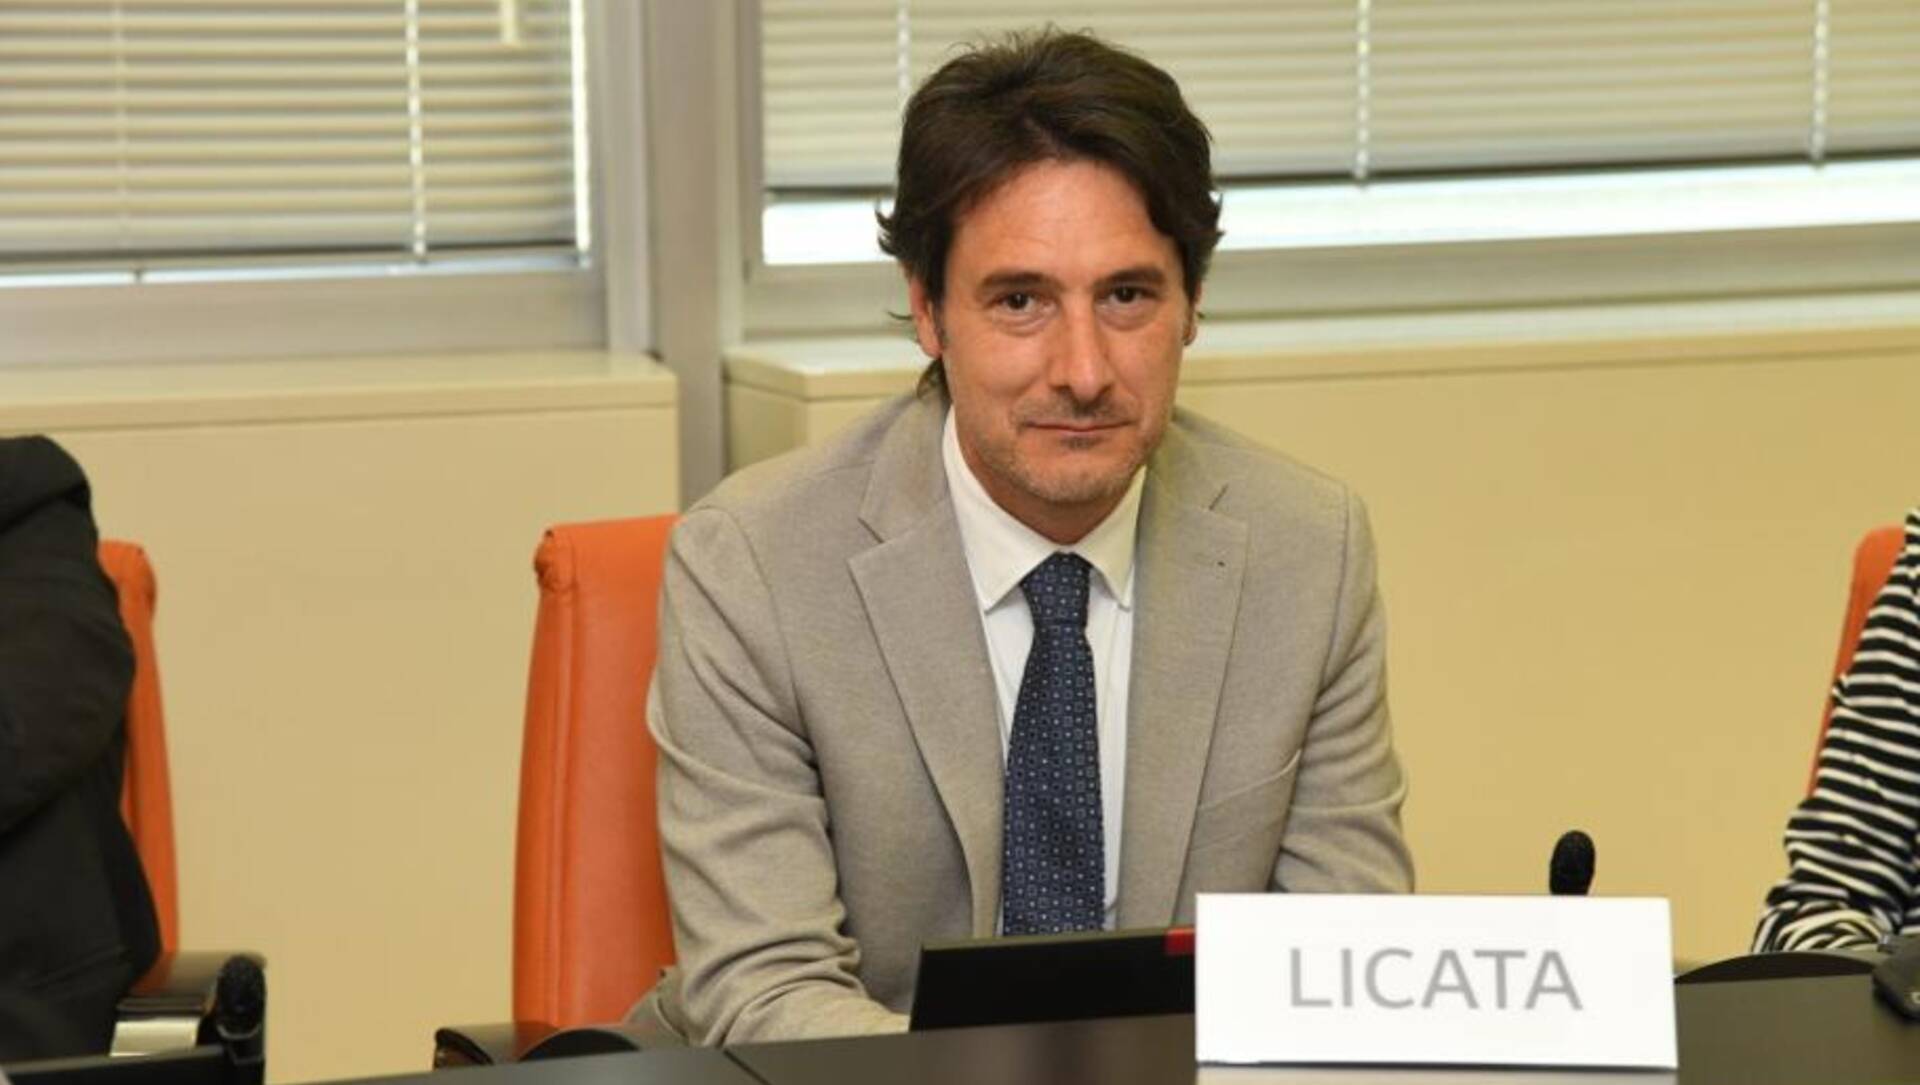 Licata nuovo segretario della commissione sul Pnrr: “E’ un’occasione storica per la Lombardia e il Paese”